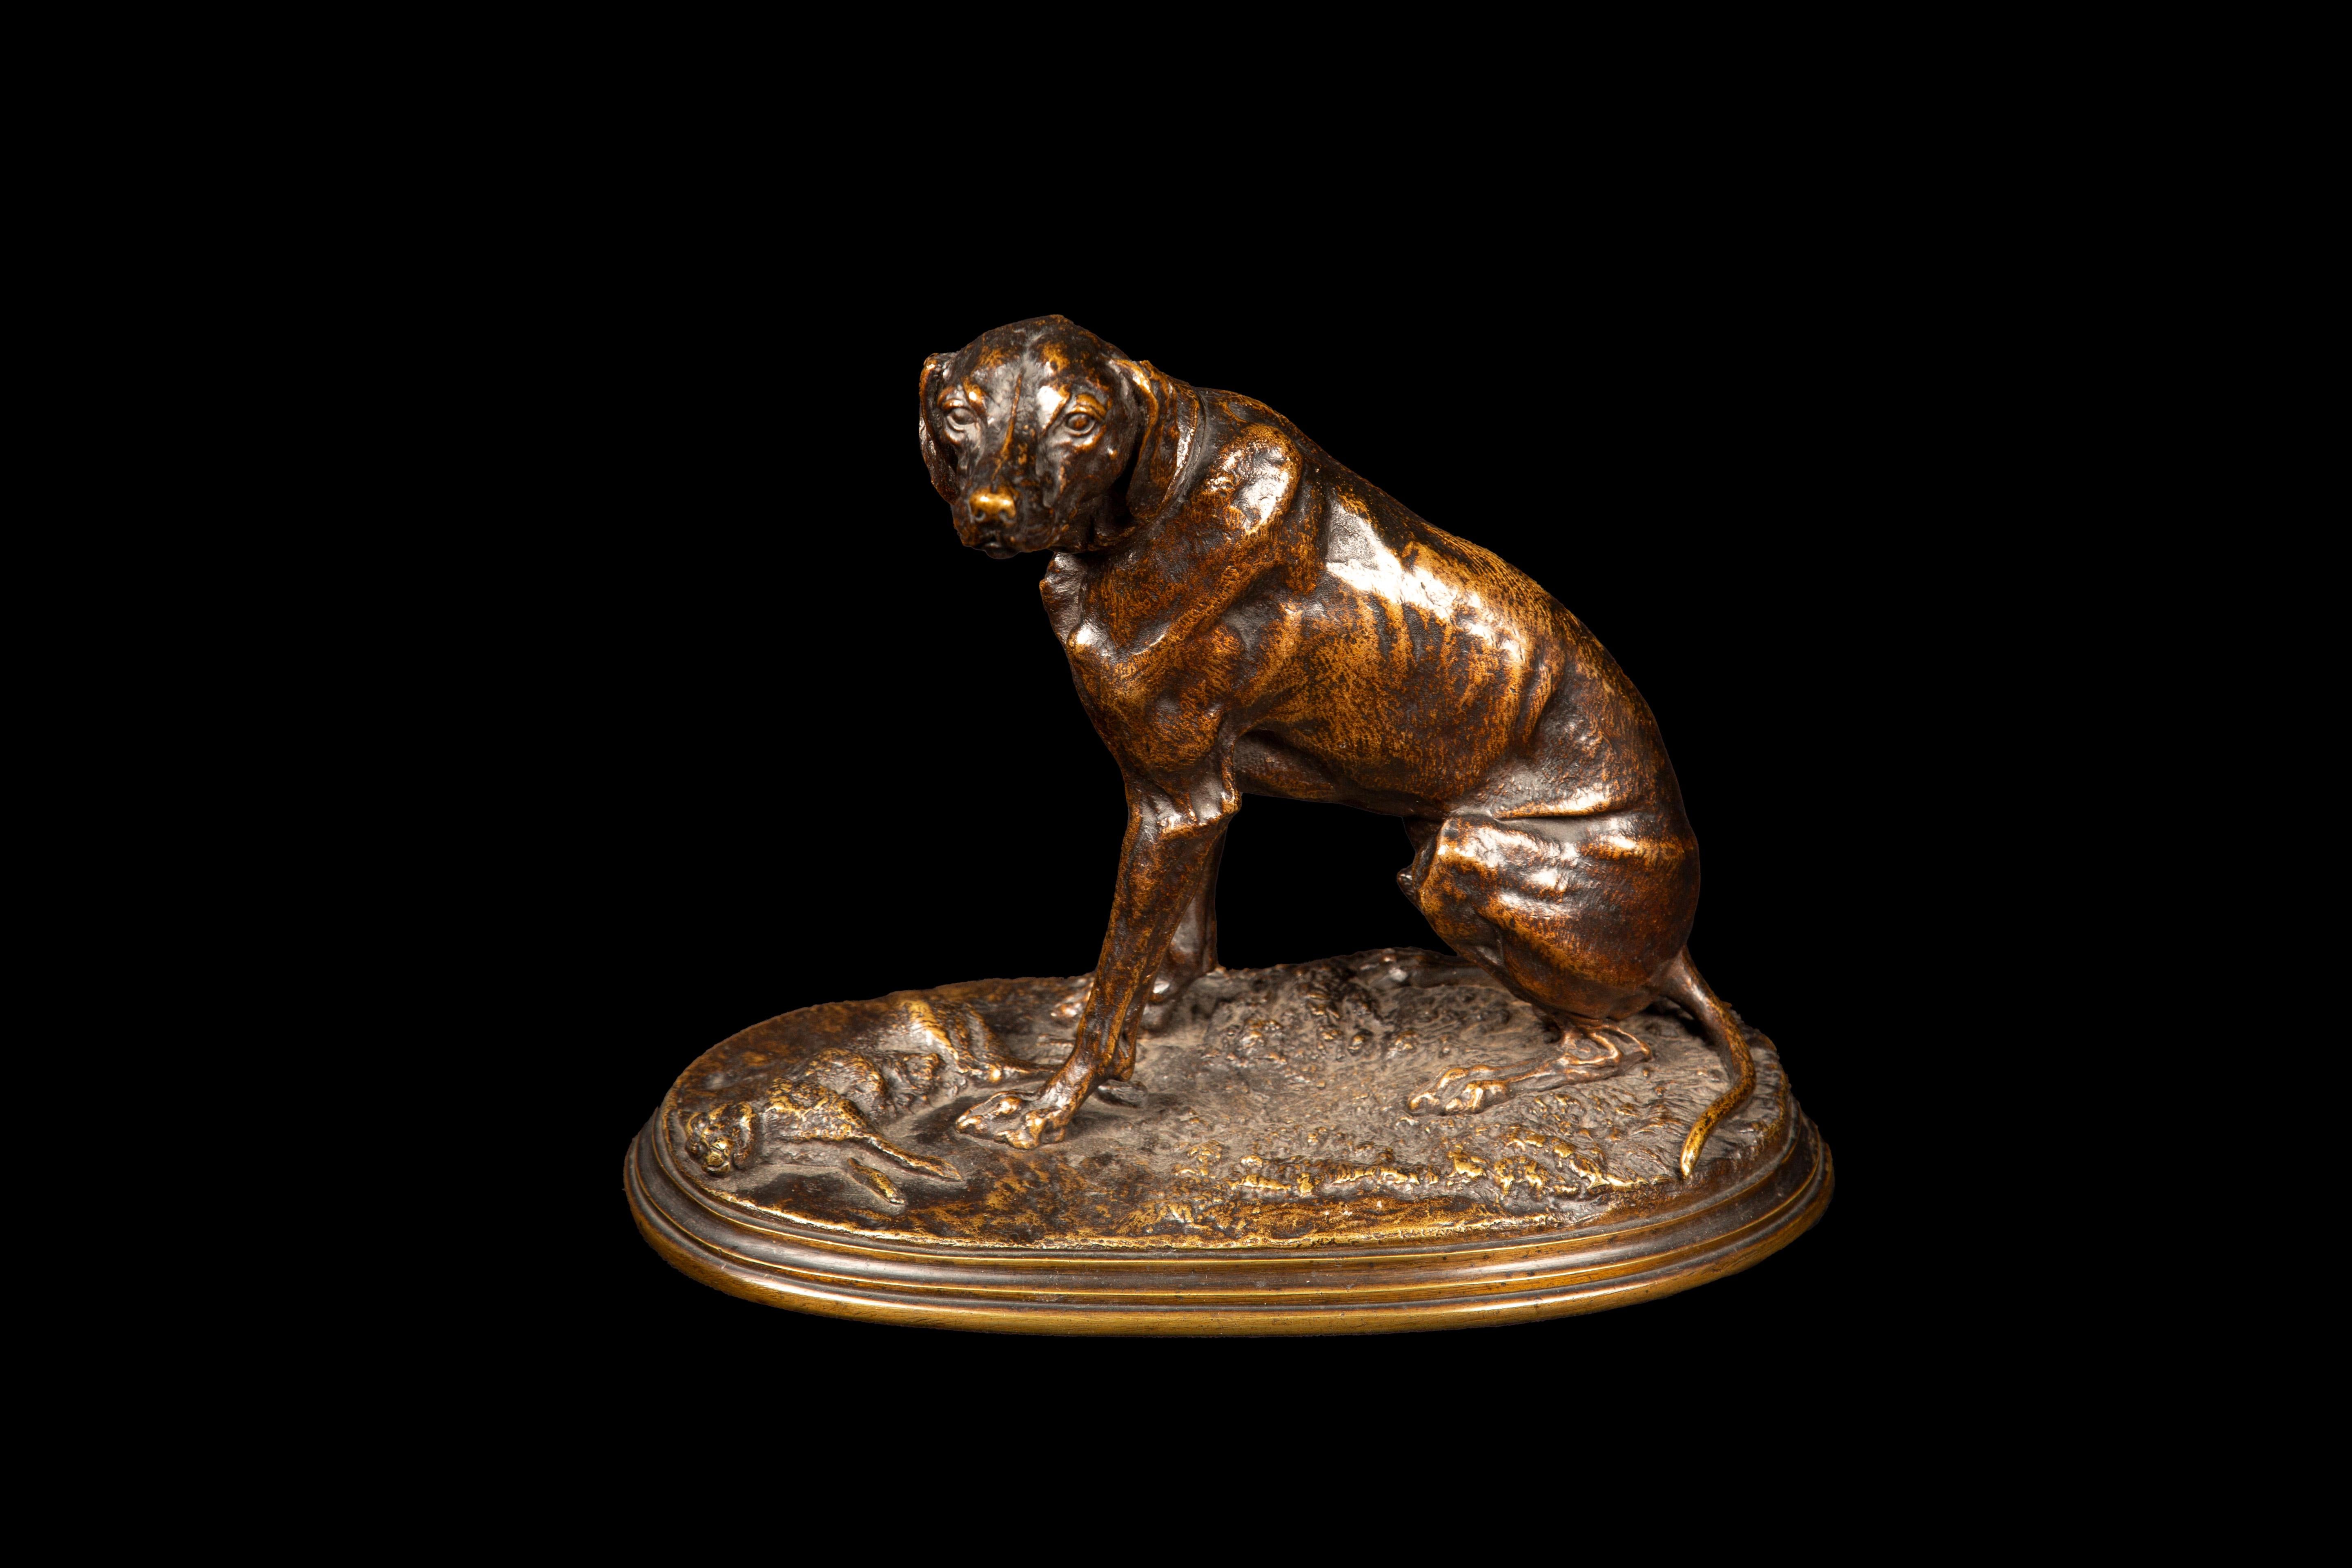 Cette sculpture, réalisée en bronze patiné, est une remarquable représentation d'une scène de chasse historique. Elle représente un chien de chasse se tenant triomphalement à côté de son trophée, capturant ainsi un moment d'intensité et de succès